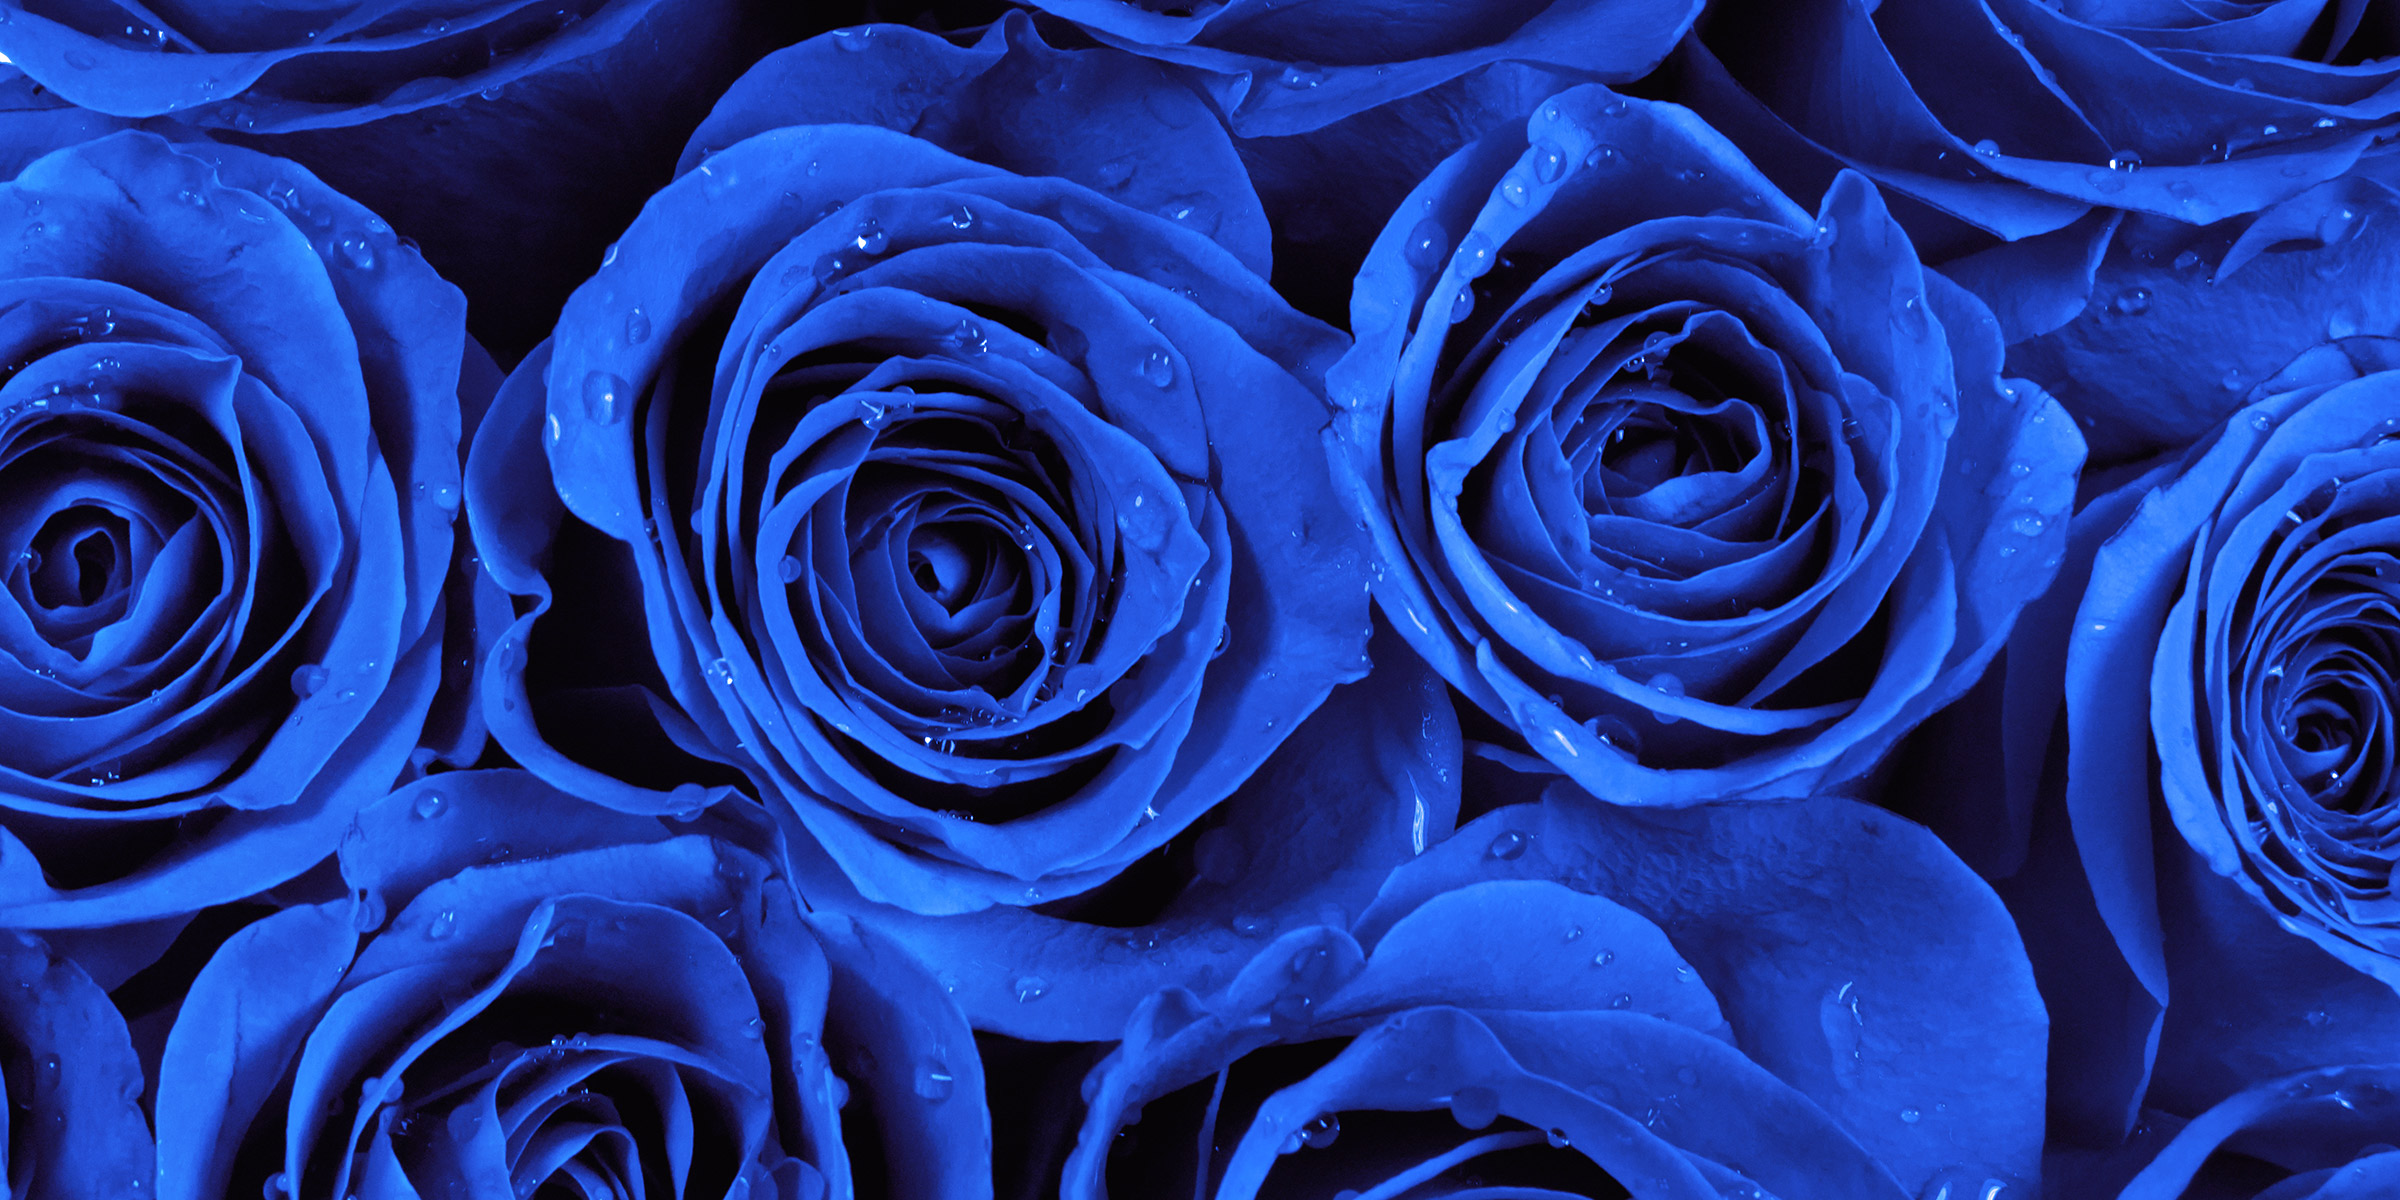 Elaines blue rose inspired engagment ring | Harriet Kelsall